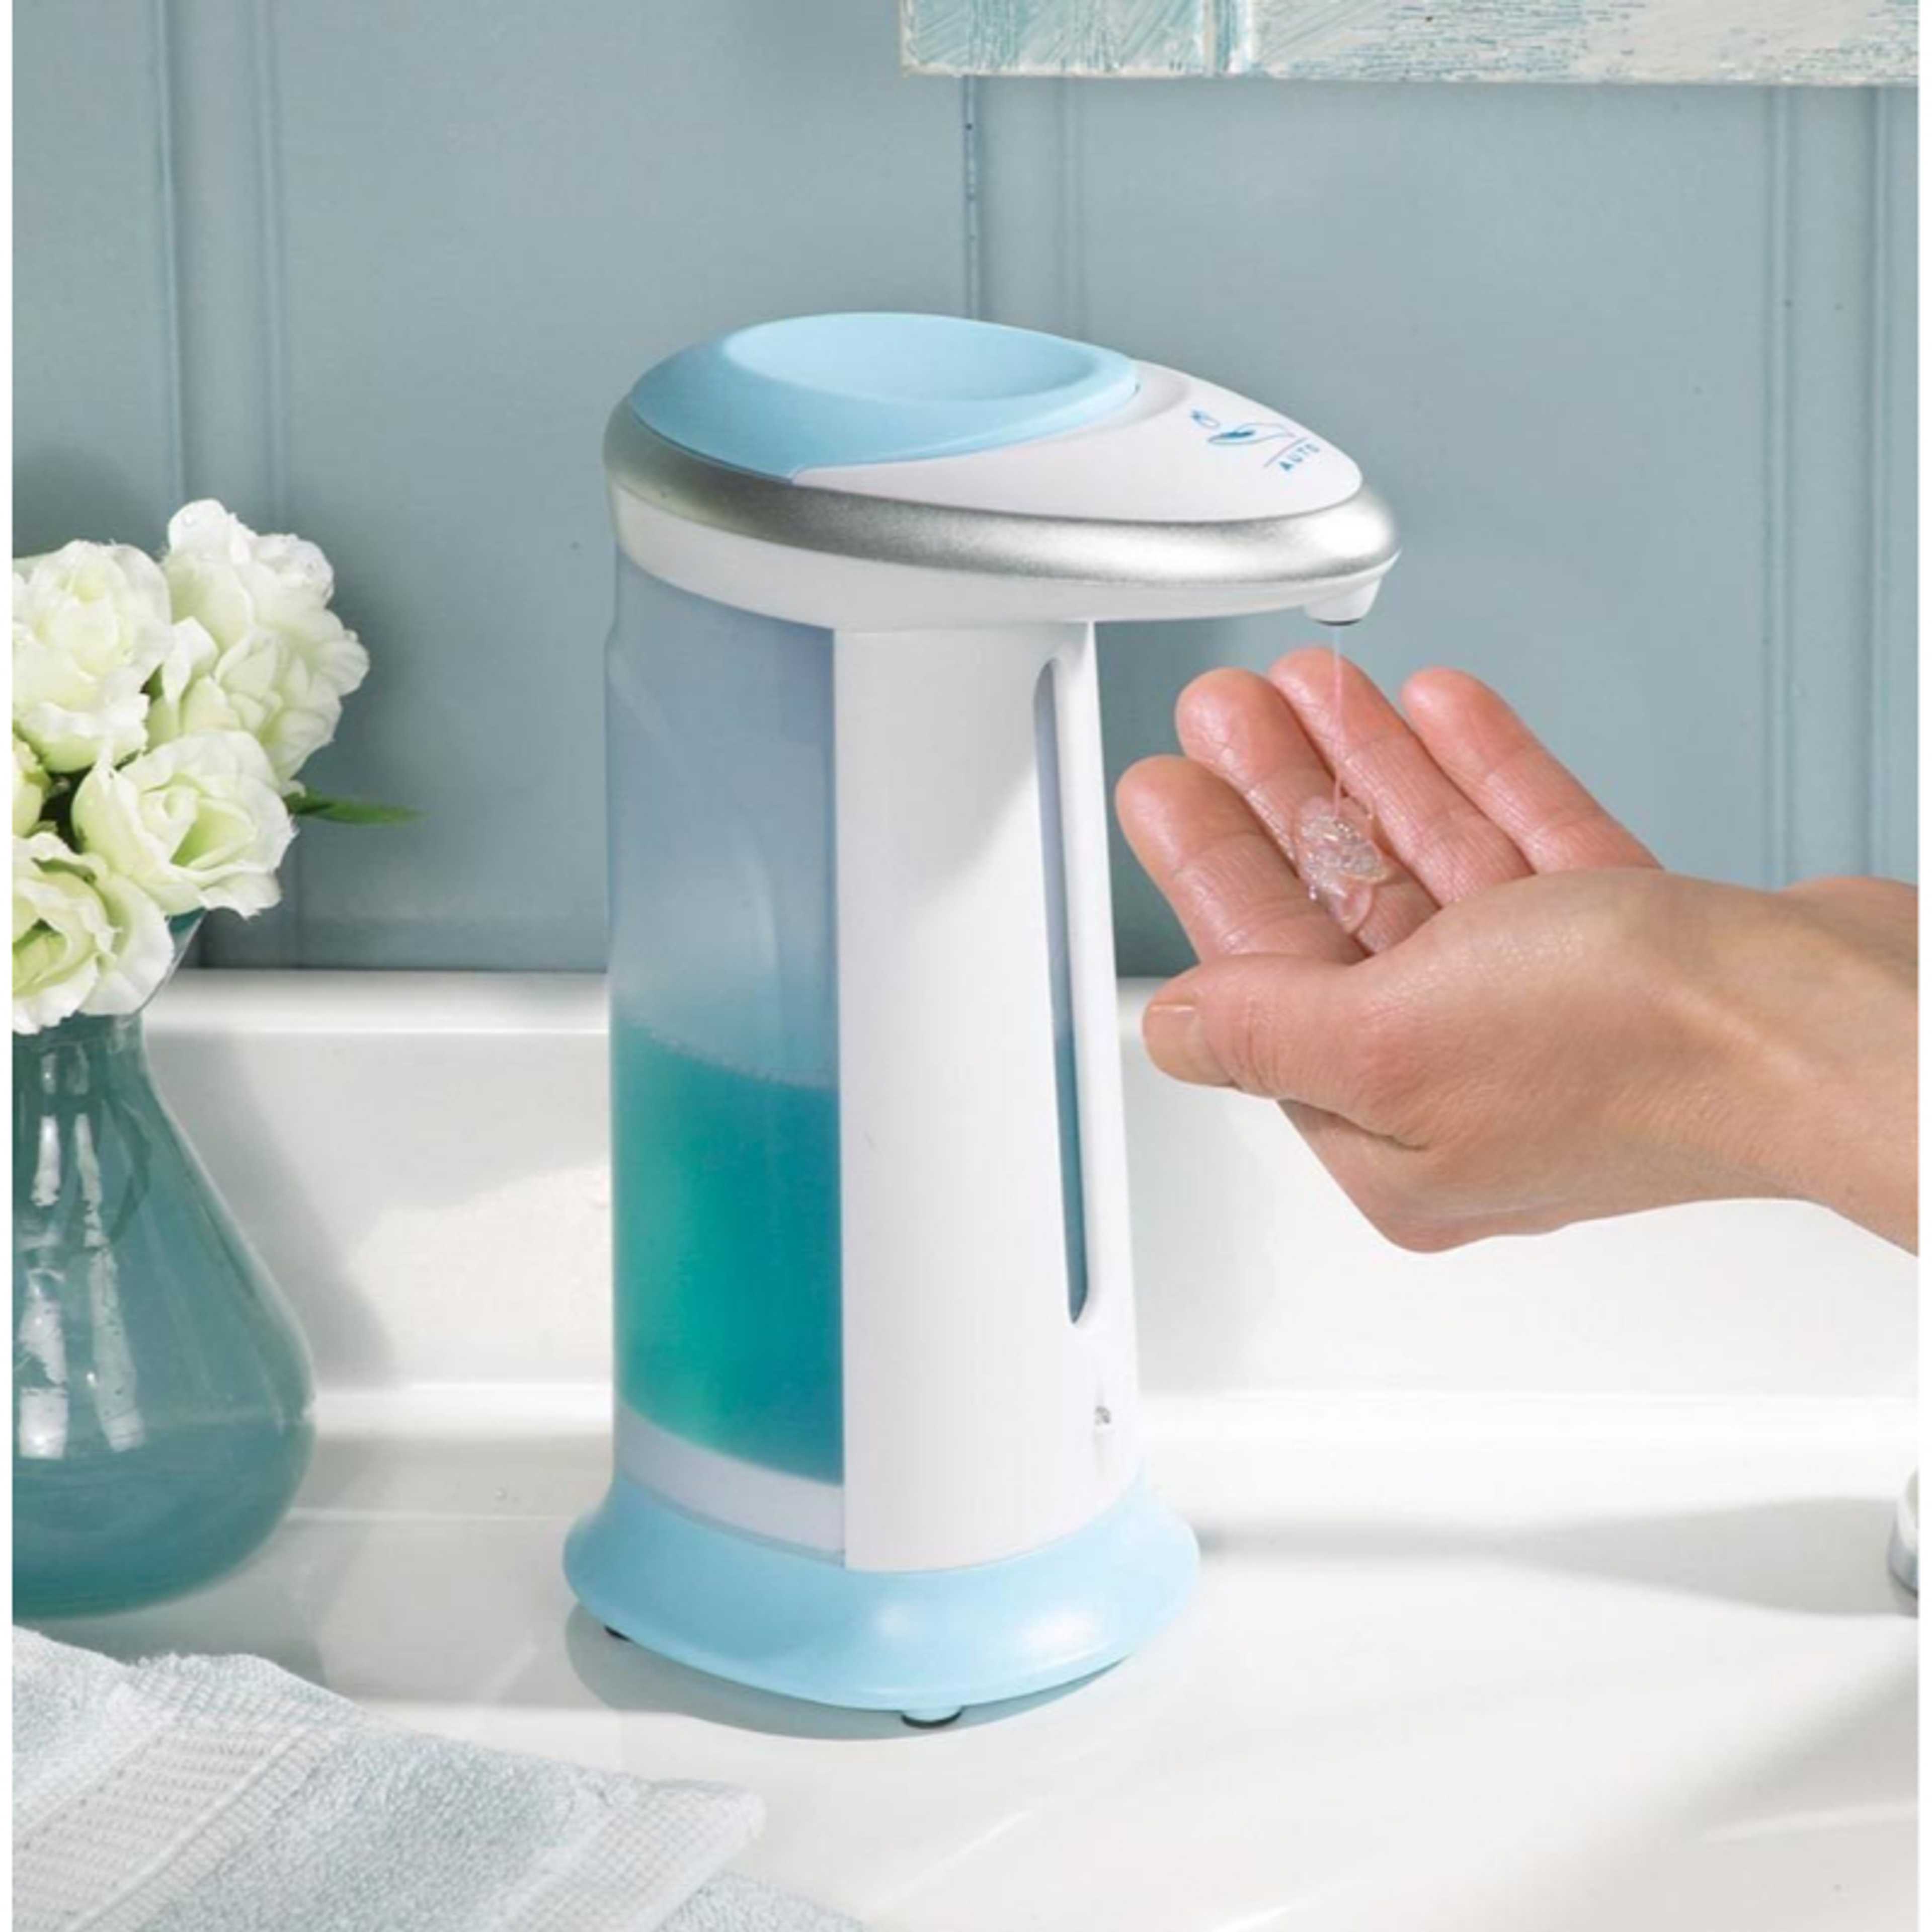 Soap Magic Hands Free Soap Dispenser,Touchless automatic Soap/Lotion/Hand sanitizerdispenser